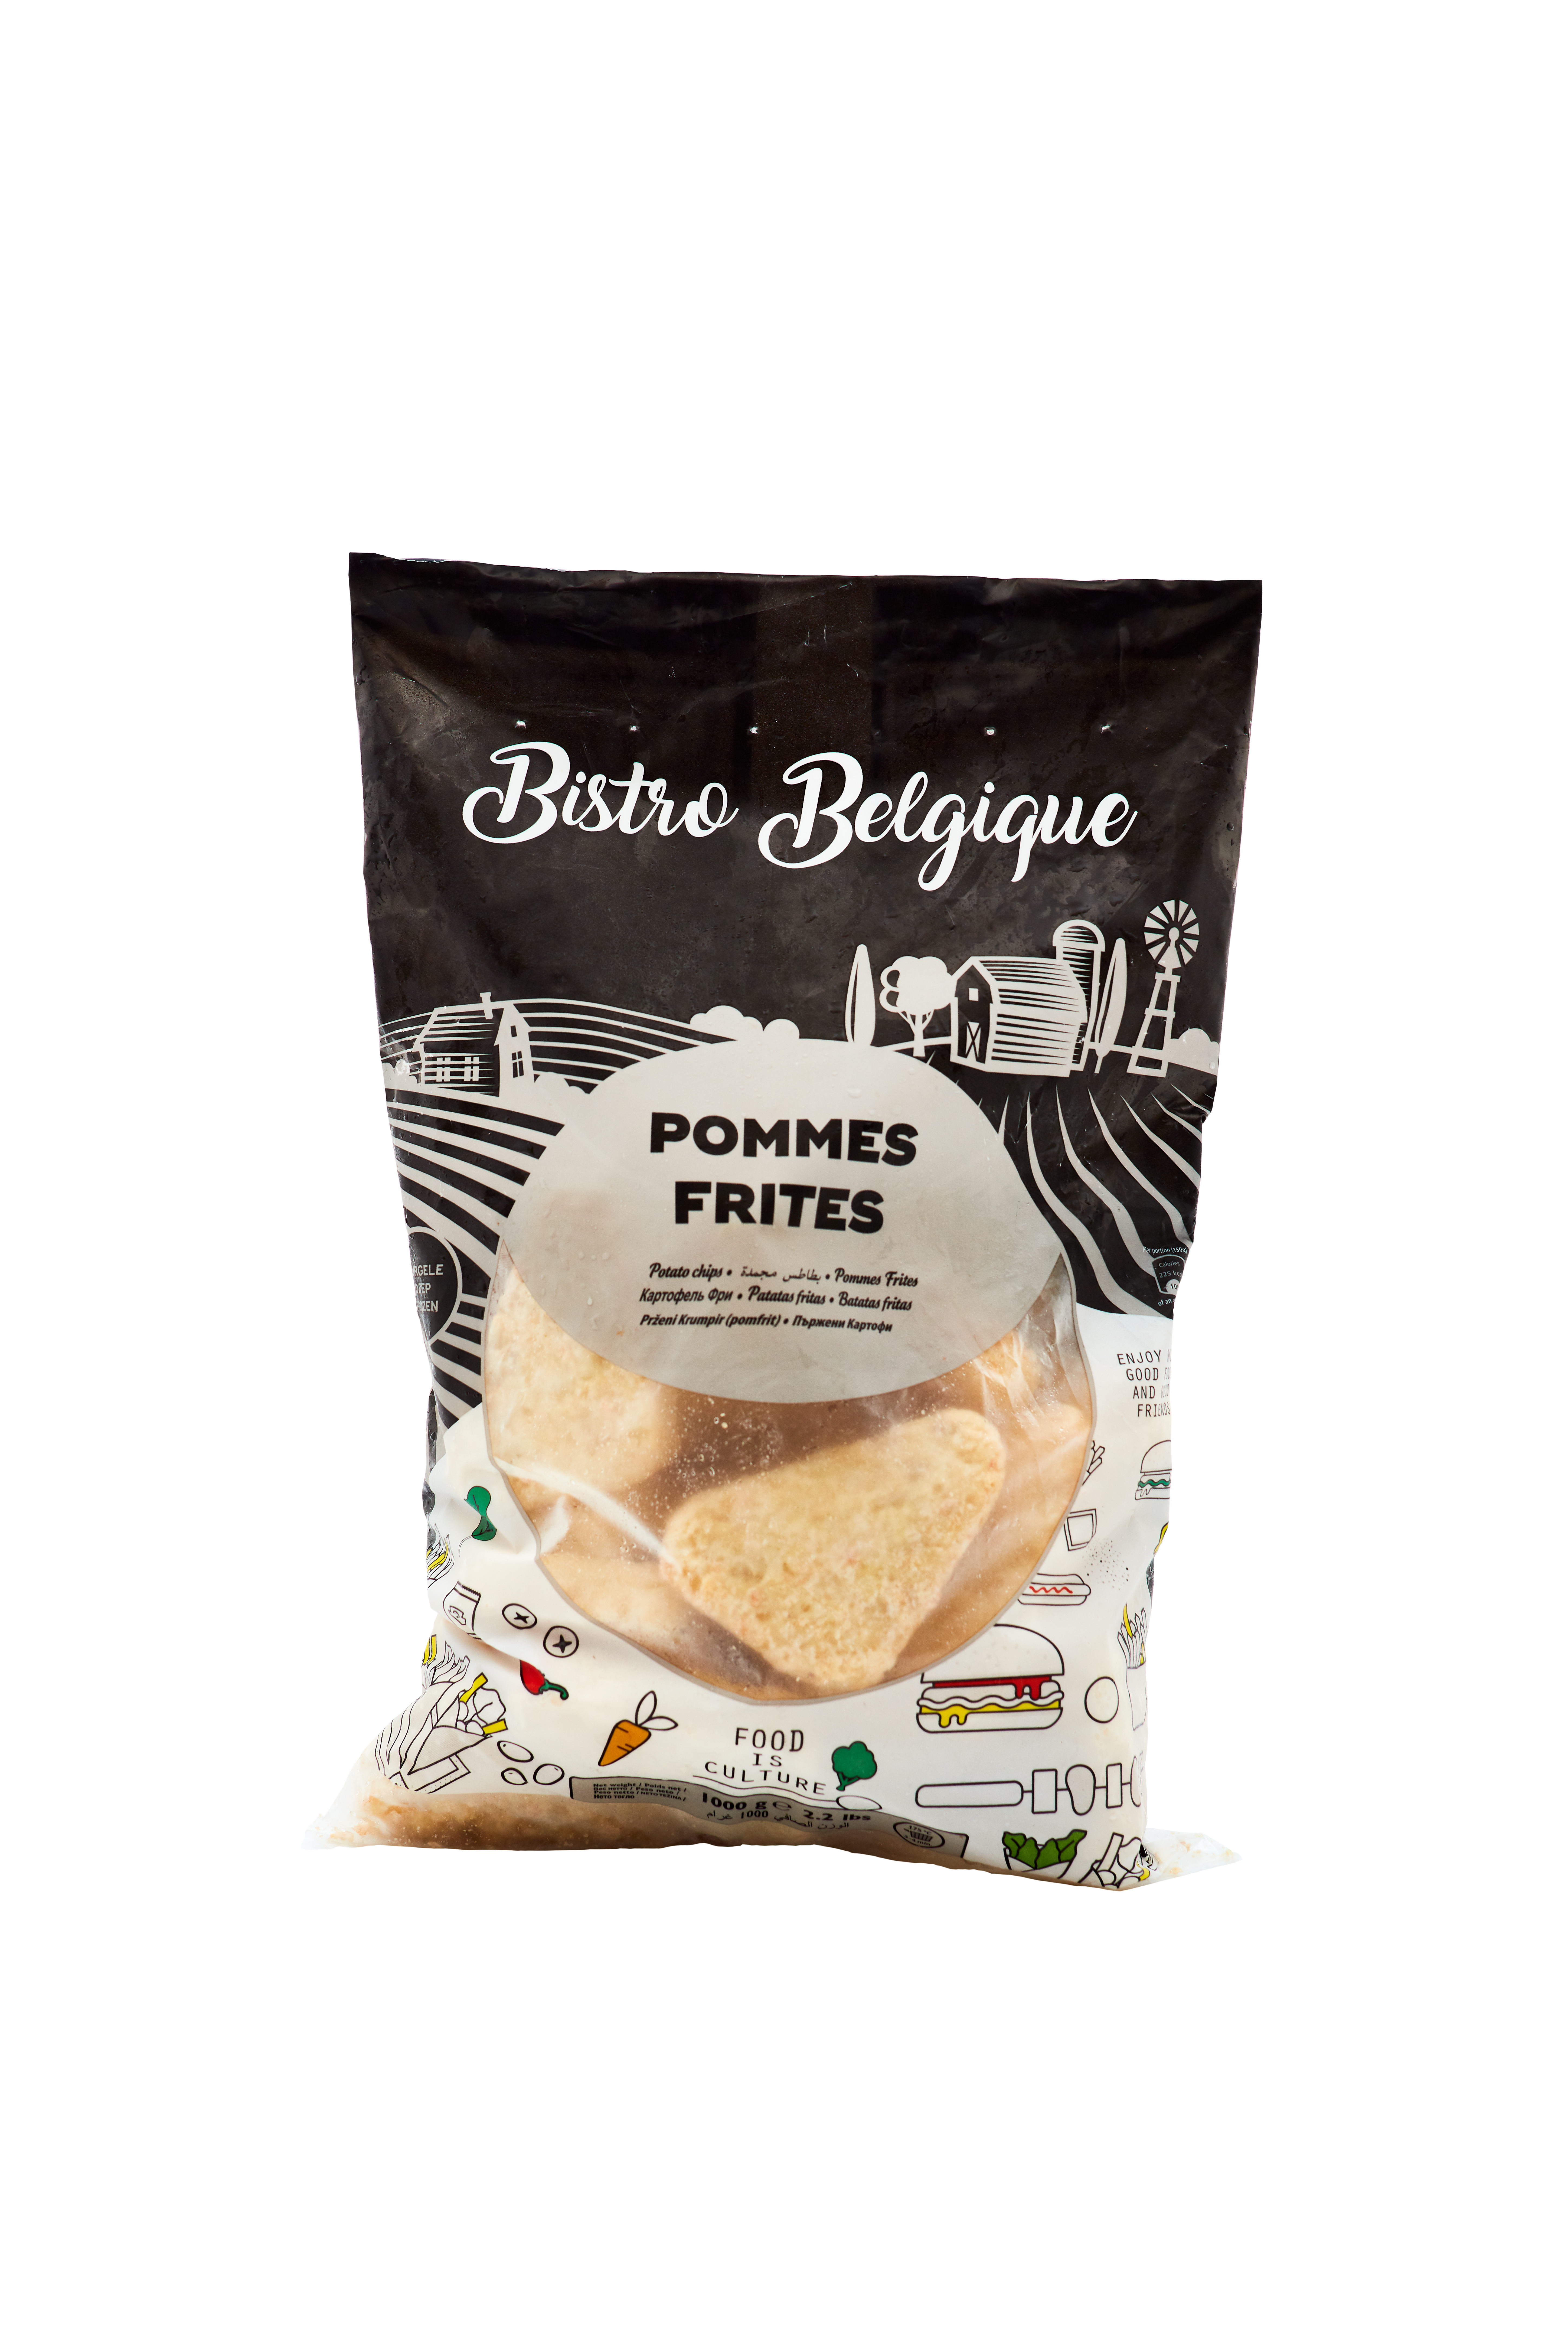 duchess potatoes bistro belgique brand packaging